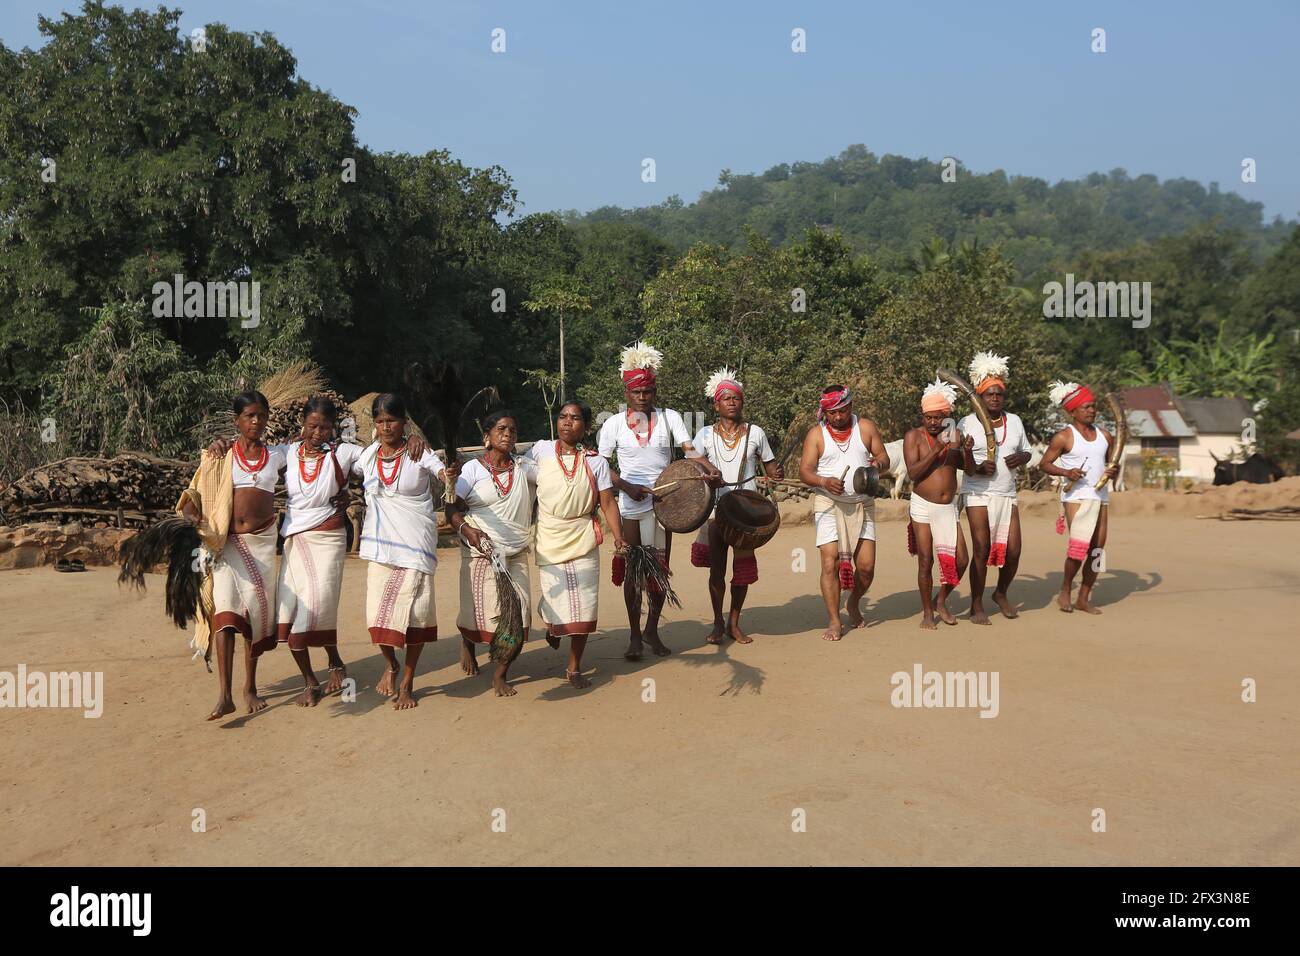 LANJIA SAORA TRIBU - danse de groupe traditionnelle. Danseurs de sexe masculin avec des linges et des têtes décorés de plumes de volaille blanche jouant des tambours, gagerai, trète Banque D'Images